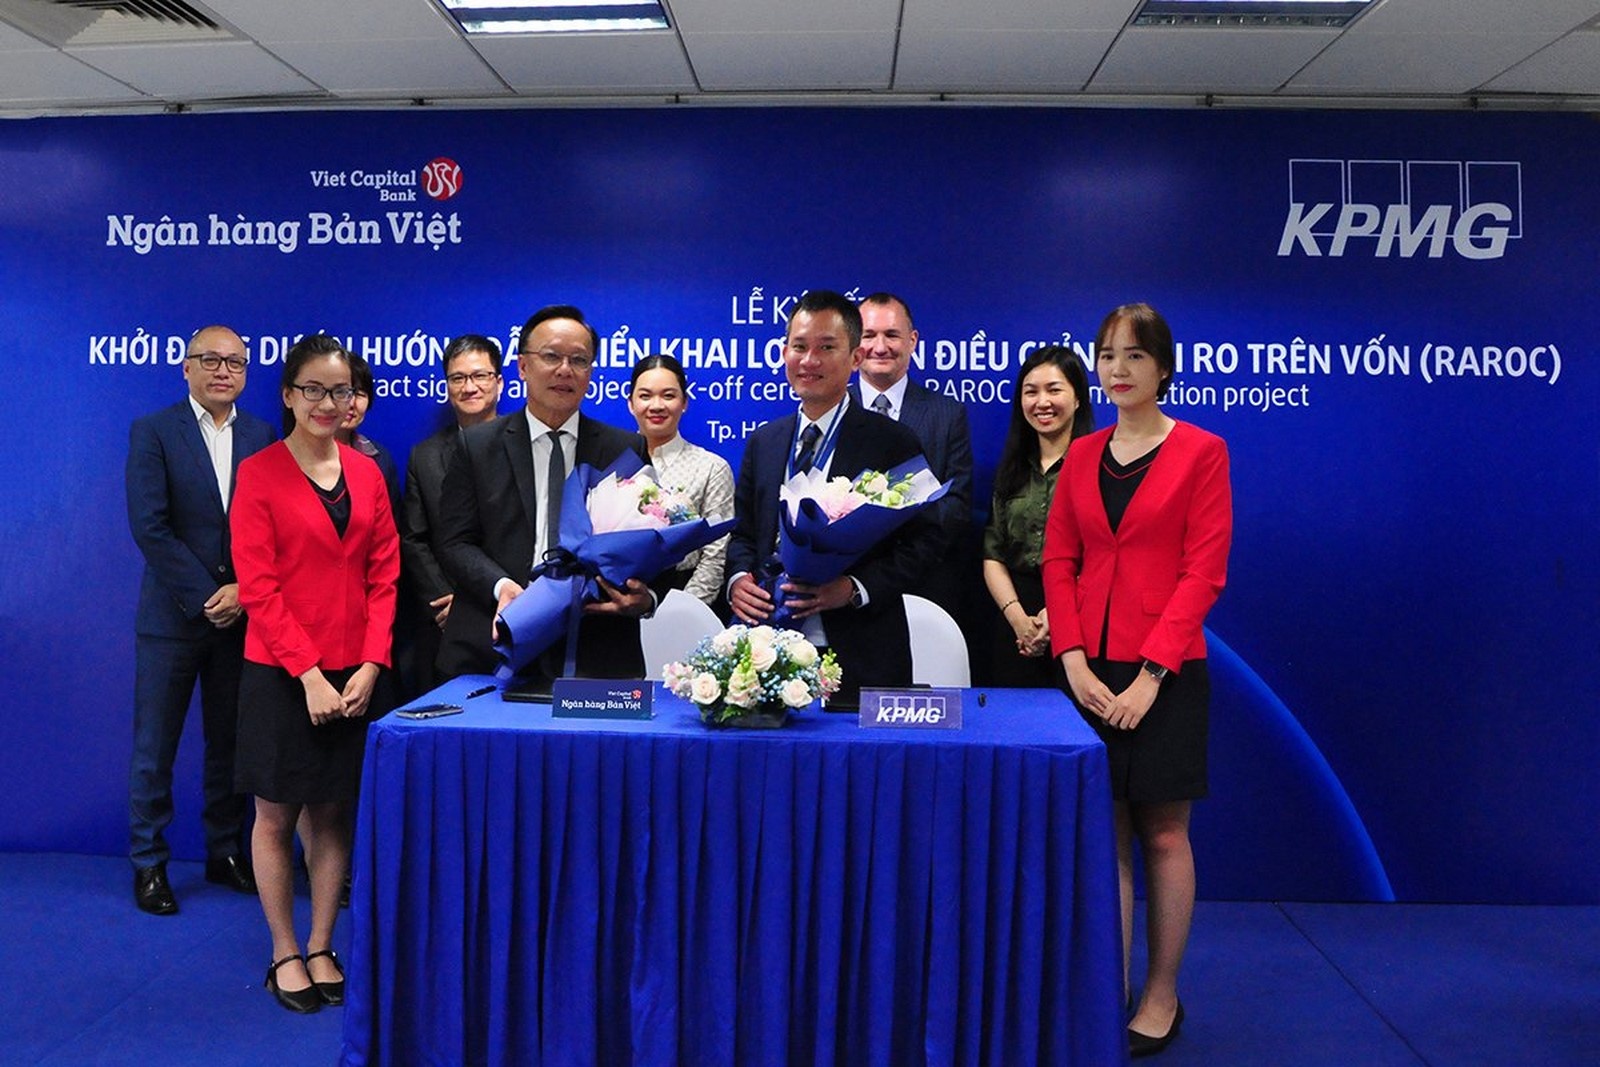 Ngân hàng Bản Việt hợp tác cùng KPMG triển khai dự án “Lợi nhuận điều chính rủi ro trên vốn”